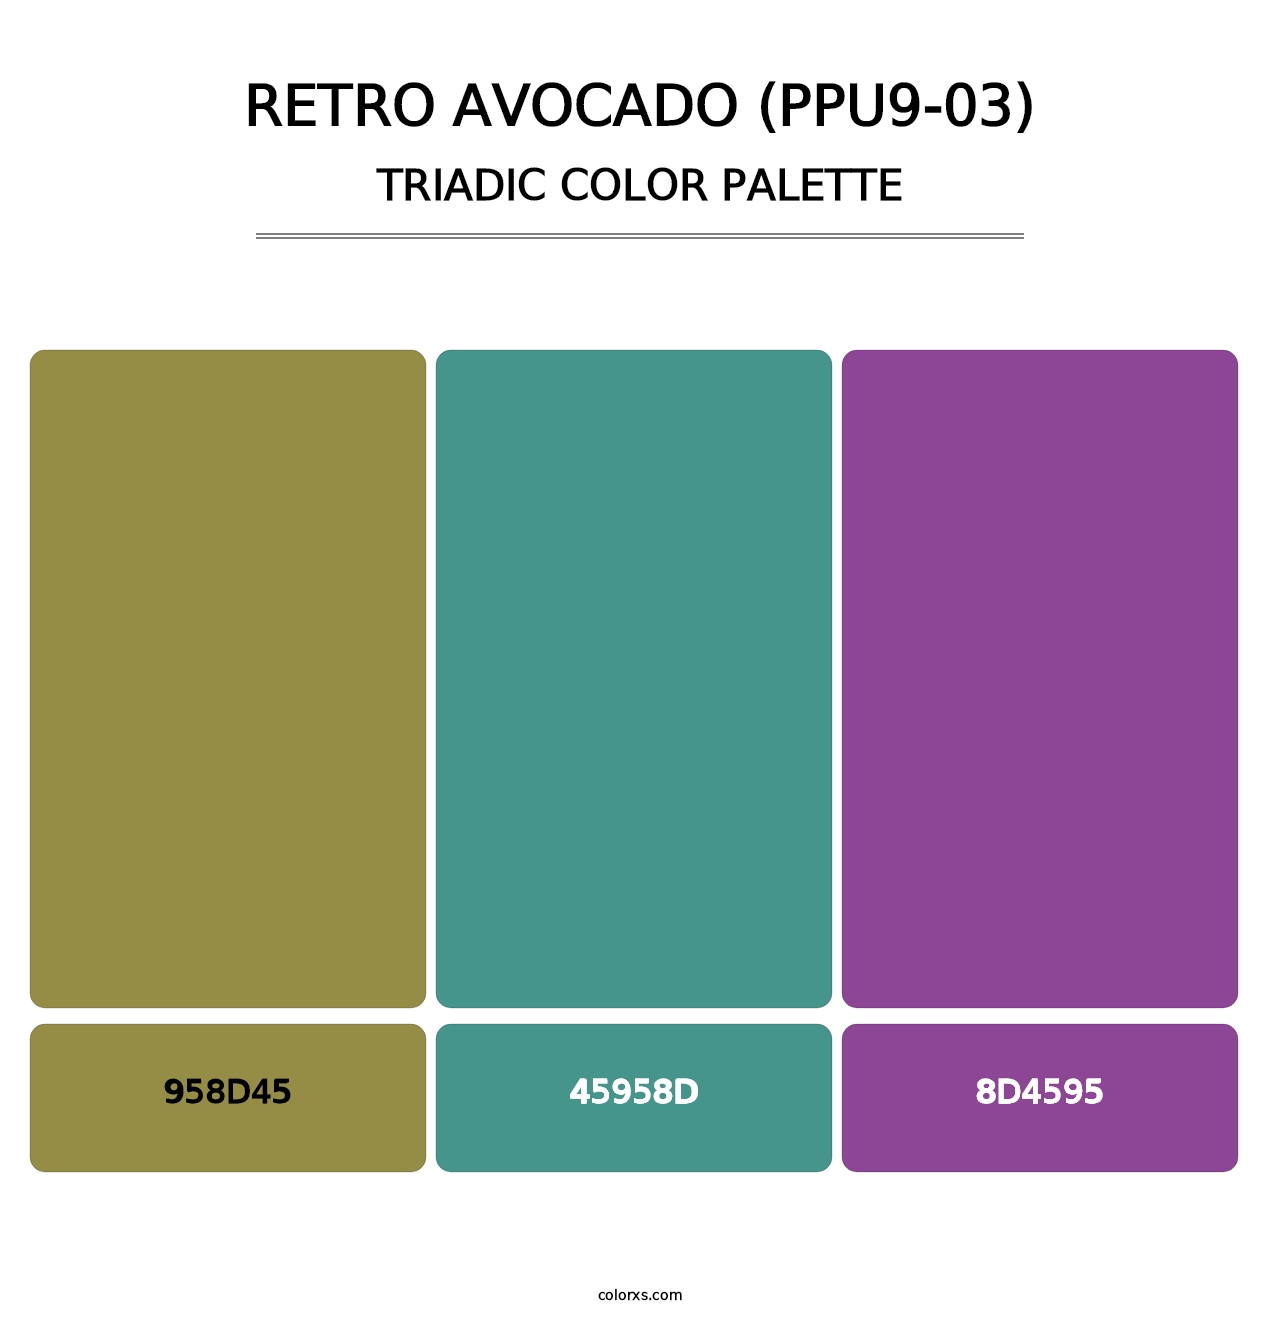 Retro Avocado (PPU9-03) - Triadic Color Palette